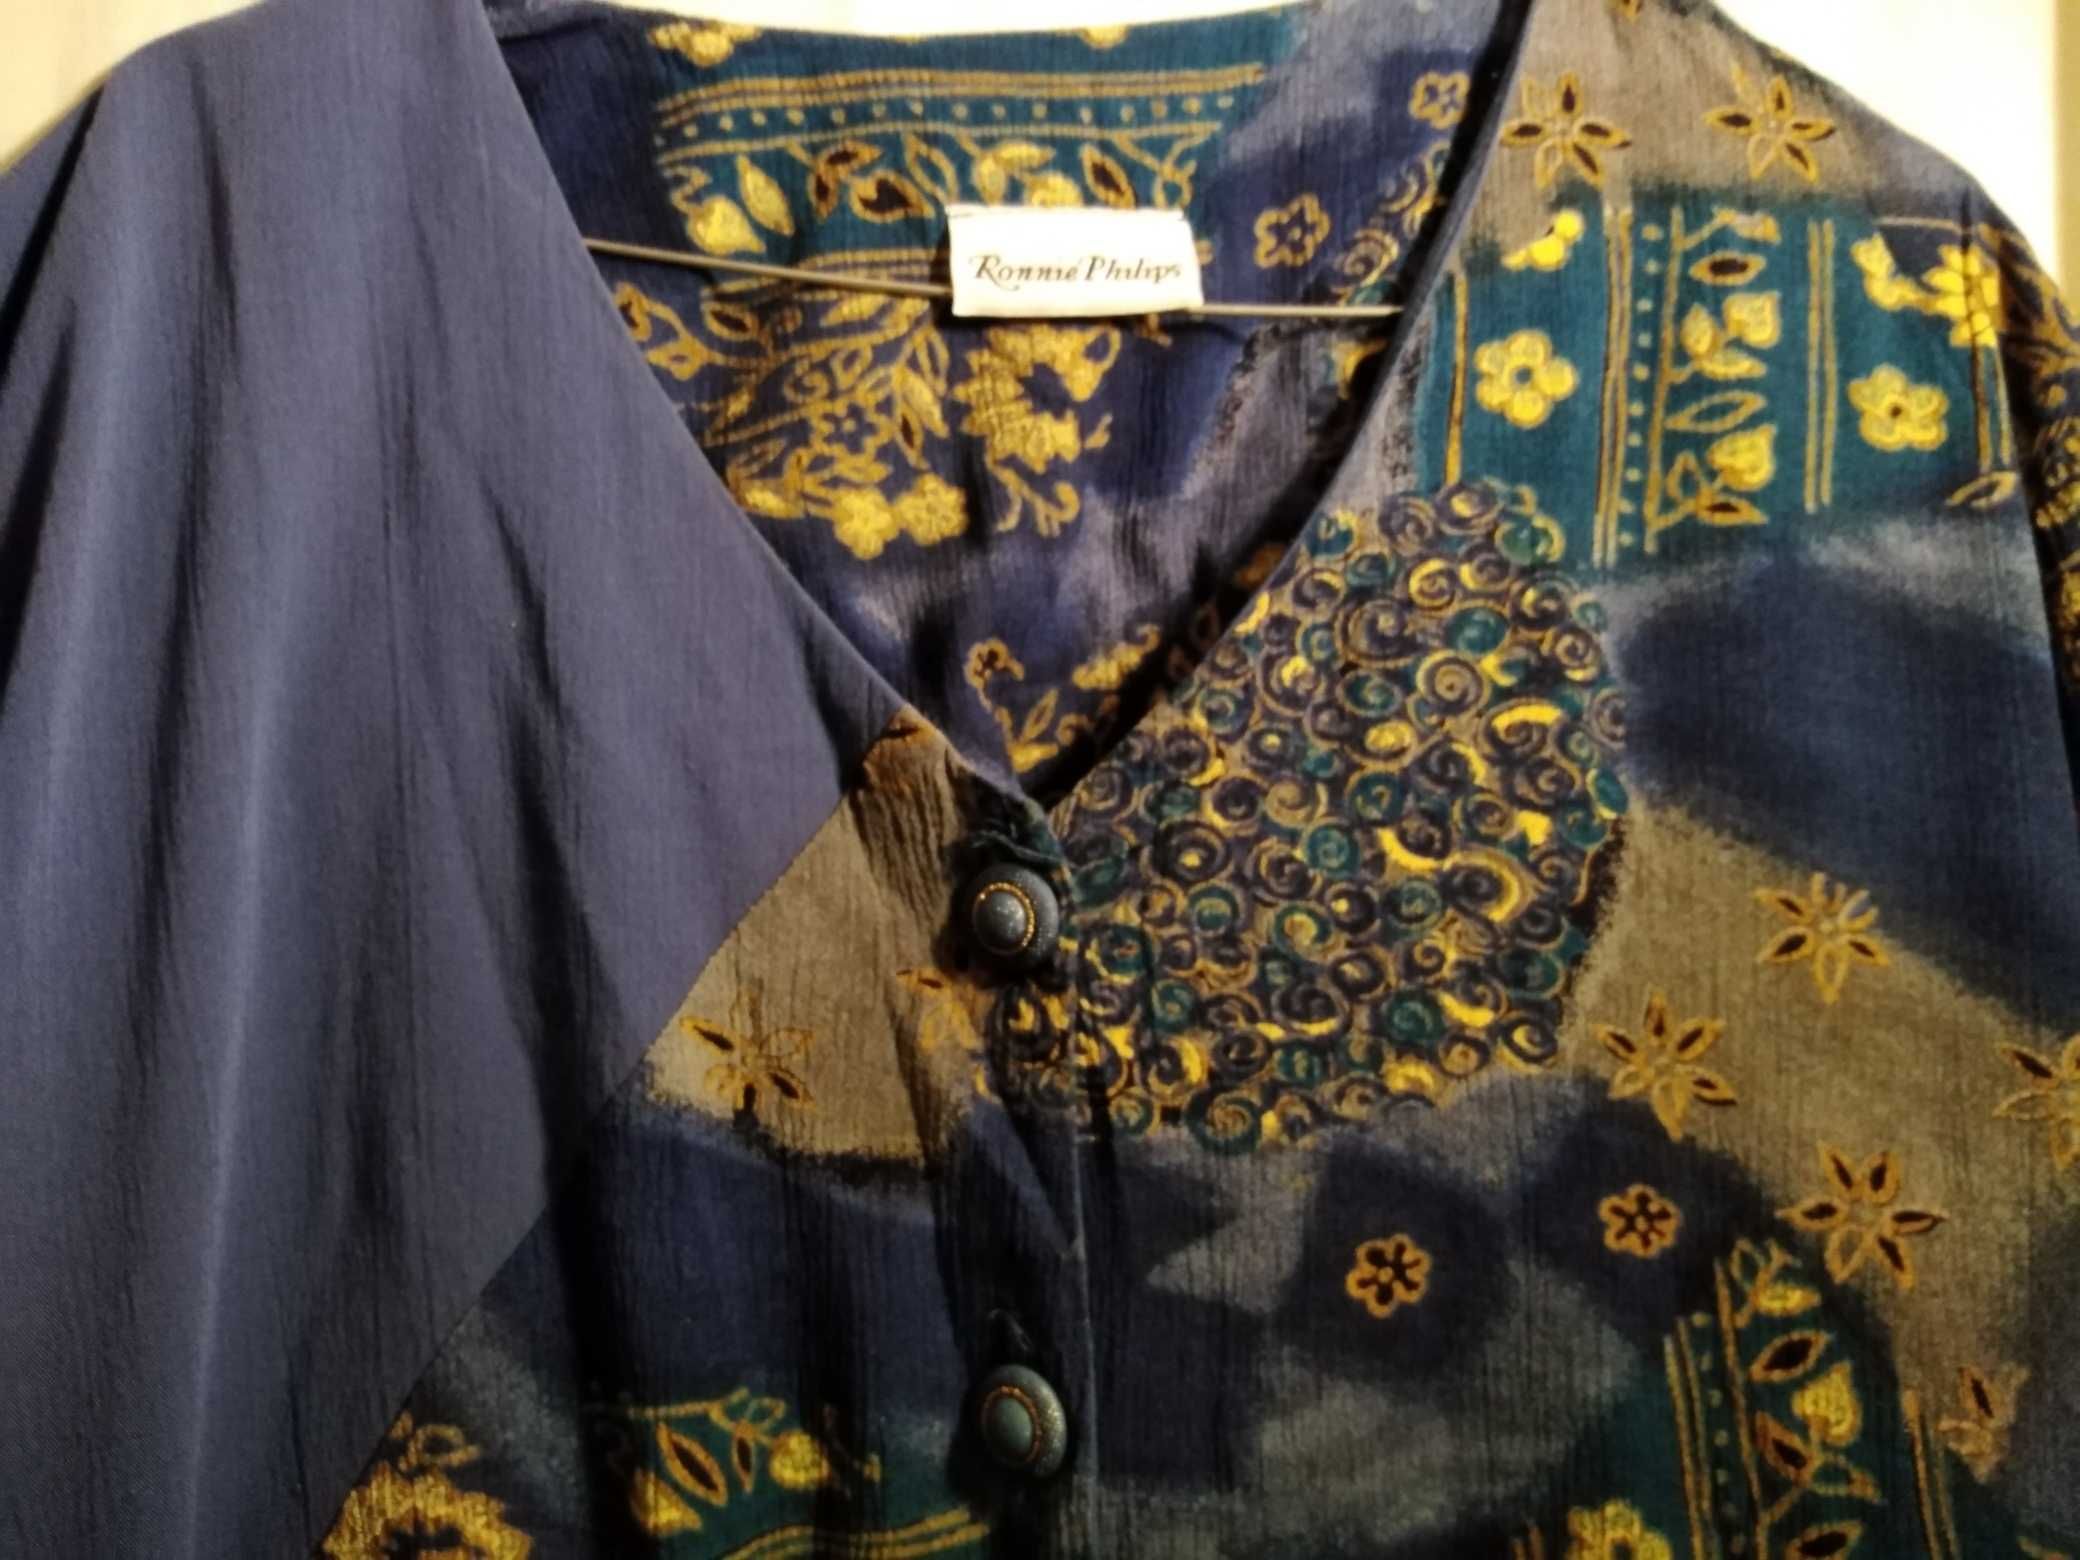 Bluza moderna din jakard,masura mare